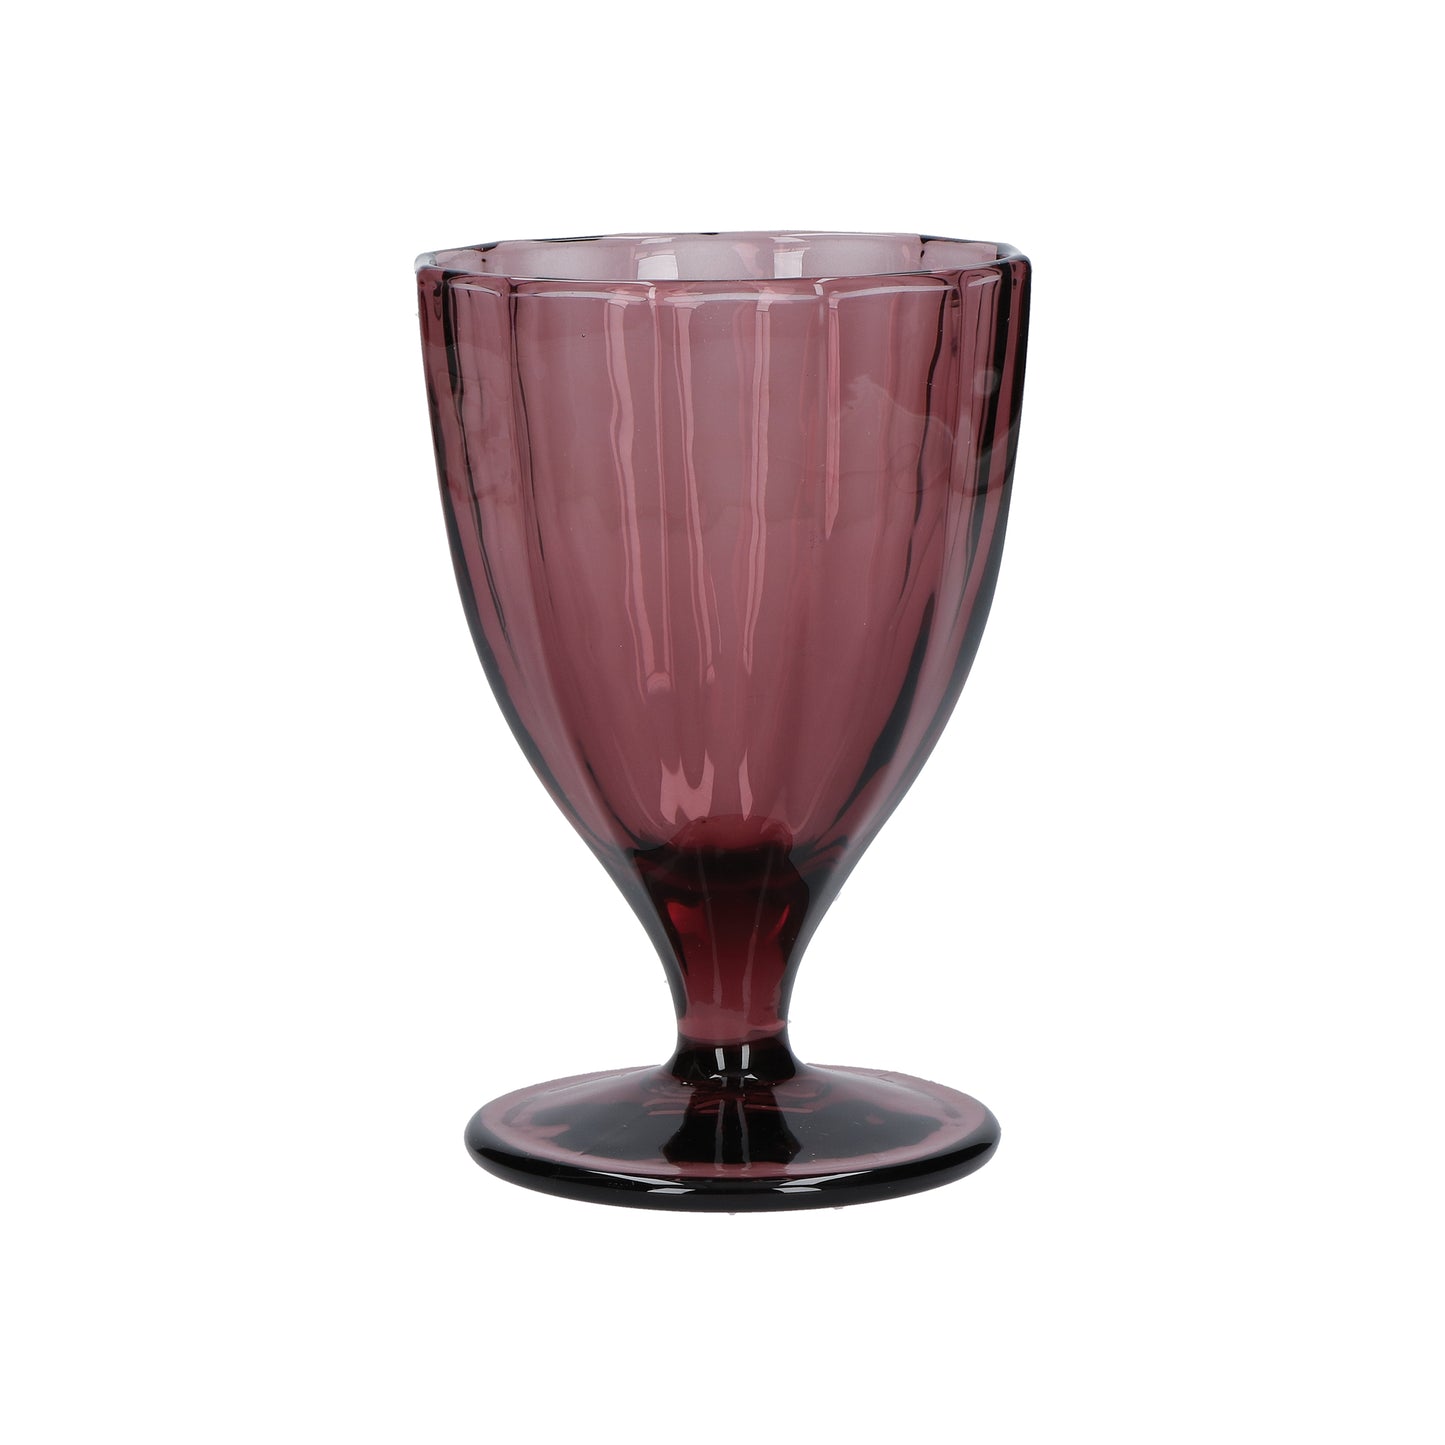 Confezione 6 calici in vetro vinaccia cc 300 - Ø 8,5 - h 13 cm. Lavabili in lavastoviglie